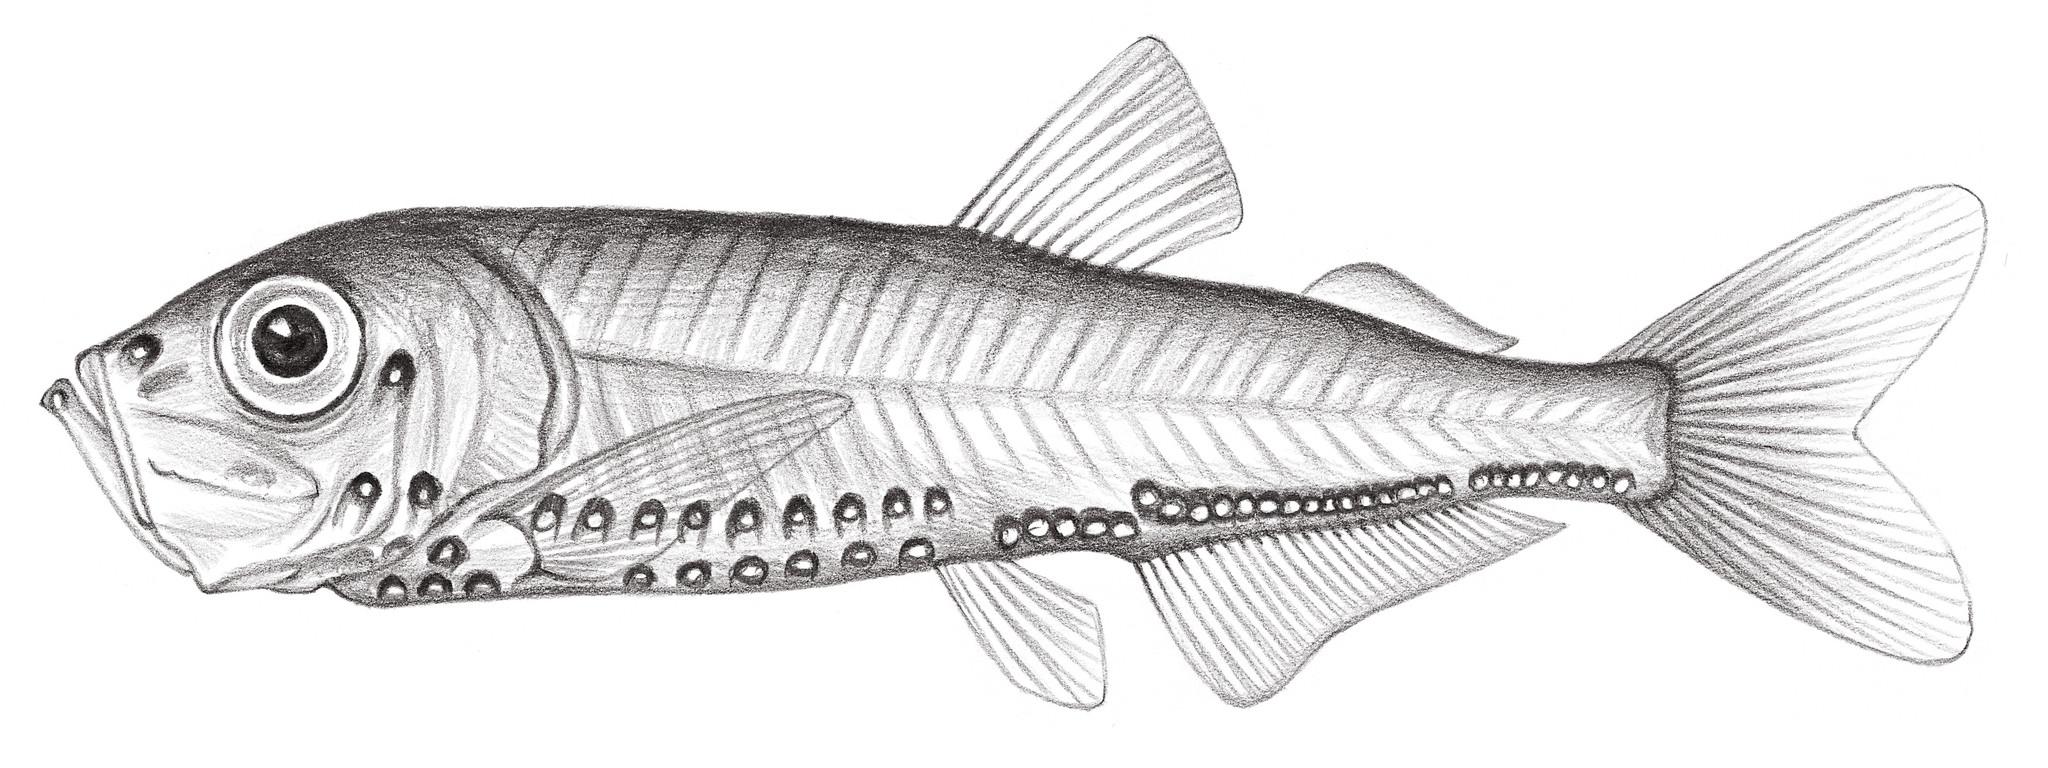 412.	穆氏光魚 Maurolicus sp. Chang & Shao, 2004